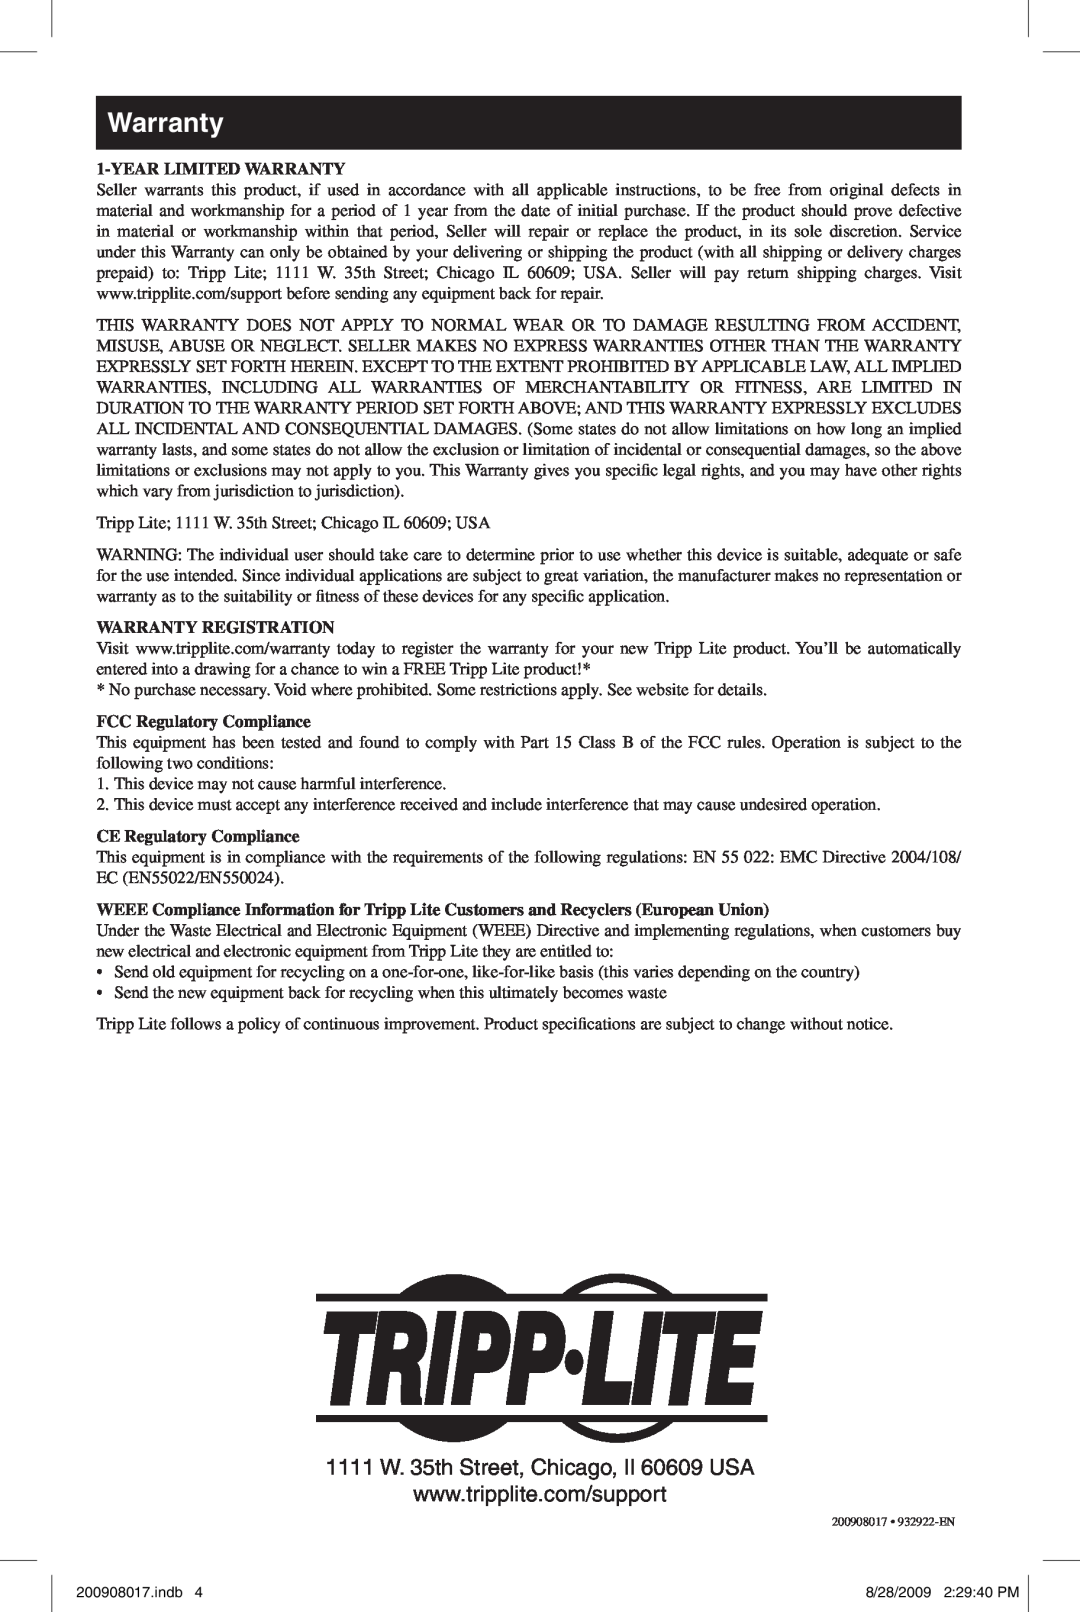 Tripp Lite U230-204-R warranty Year Limited Warranty, Warranty Registration, FCC Regulatory Compliance 